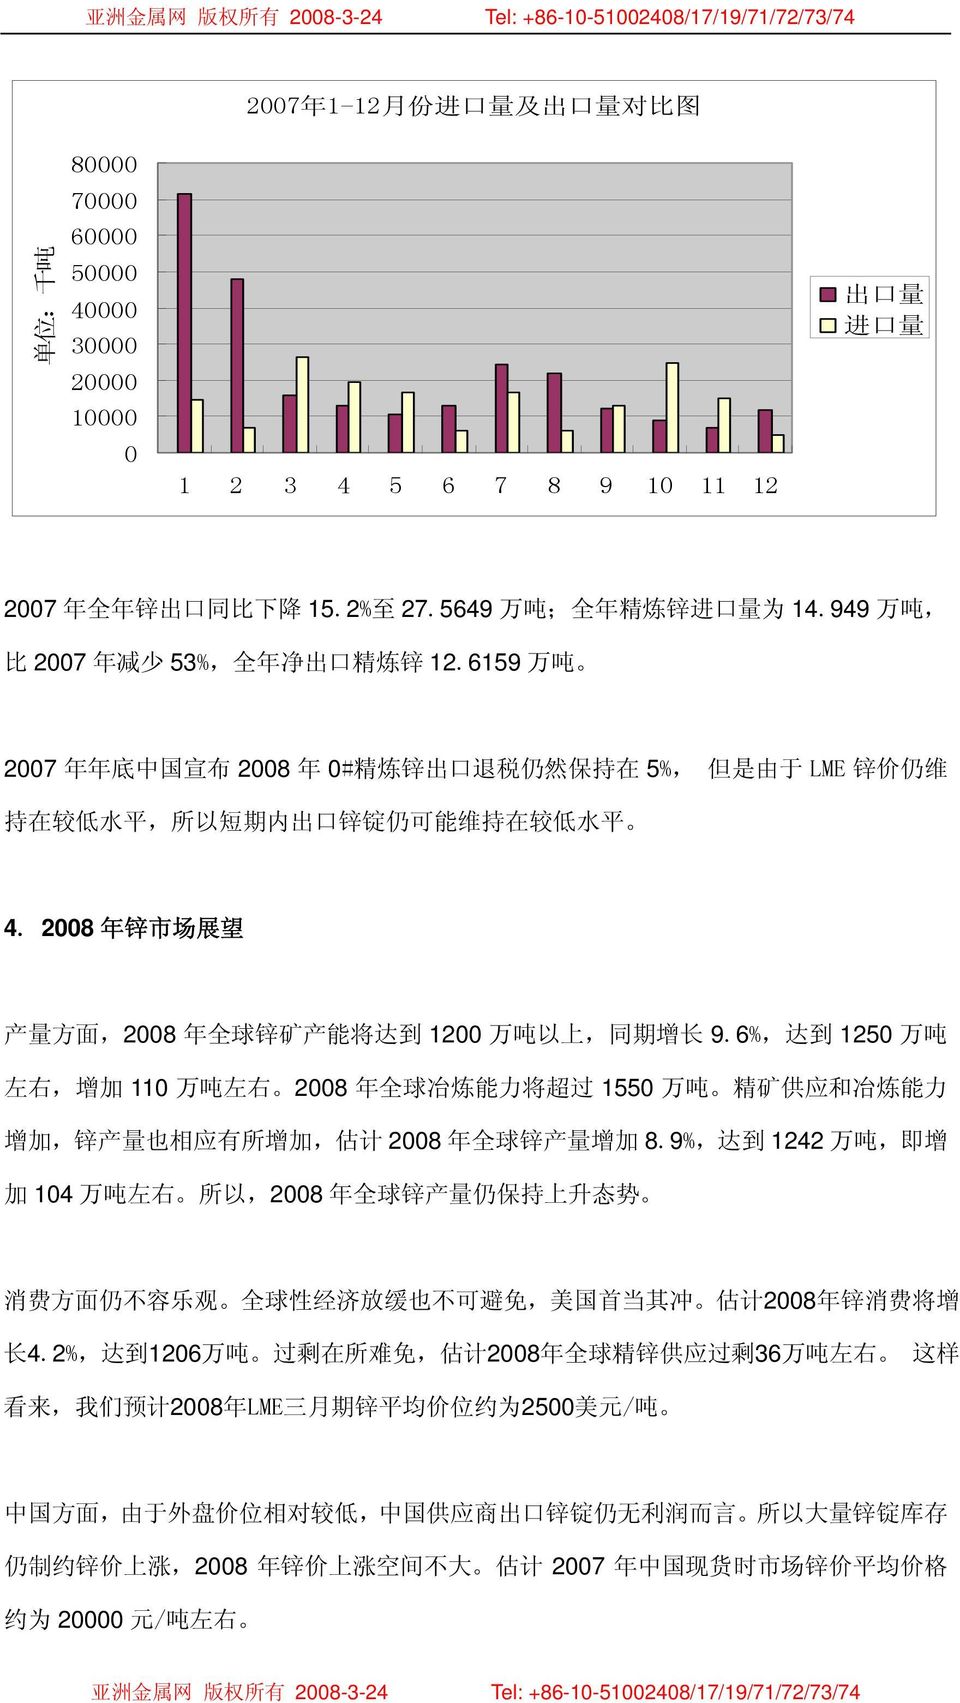 6159 万 吨 2007 年 年 底 中 国 宣 布 2008 年 0# 精 炼 锌 出 口 退 税 仍 然 保 持 在 5%, 但 是 由 于 LME 锌 价 仍 维 持 在 较 低 水 平, 所 以 短 期 内 出 口 锌 锭 仍 可 能 维 持 在 较 低 水 平 4.